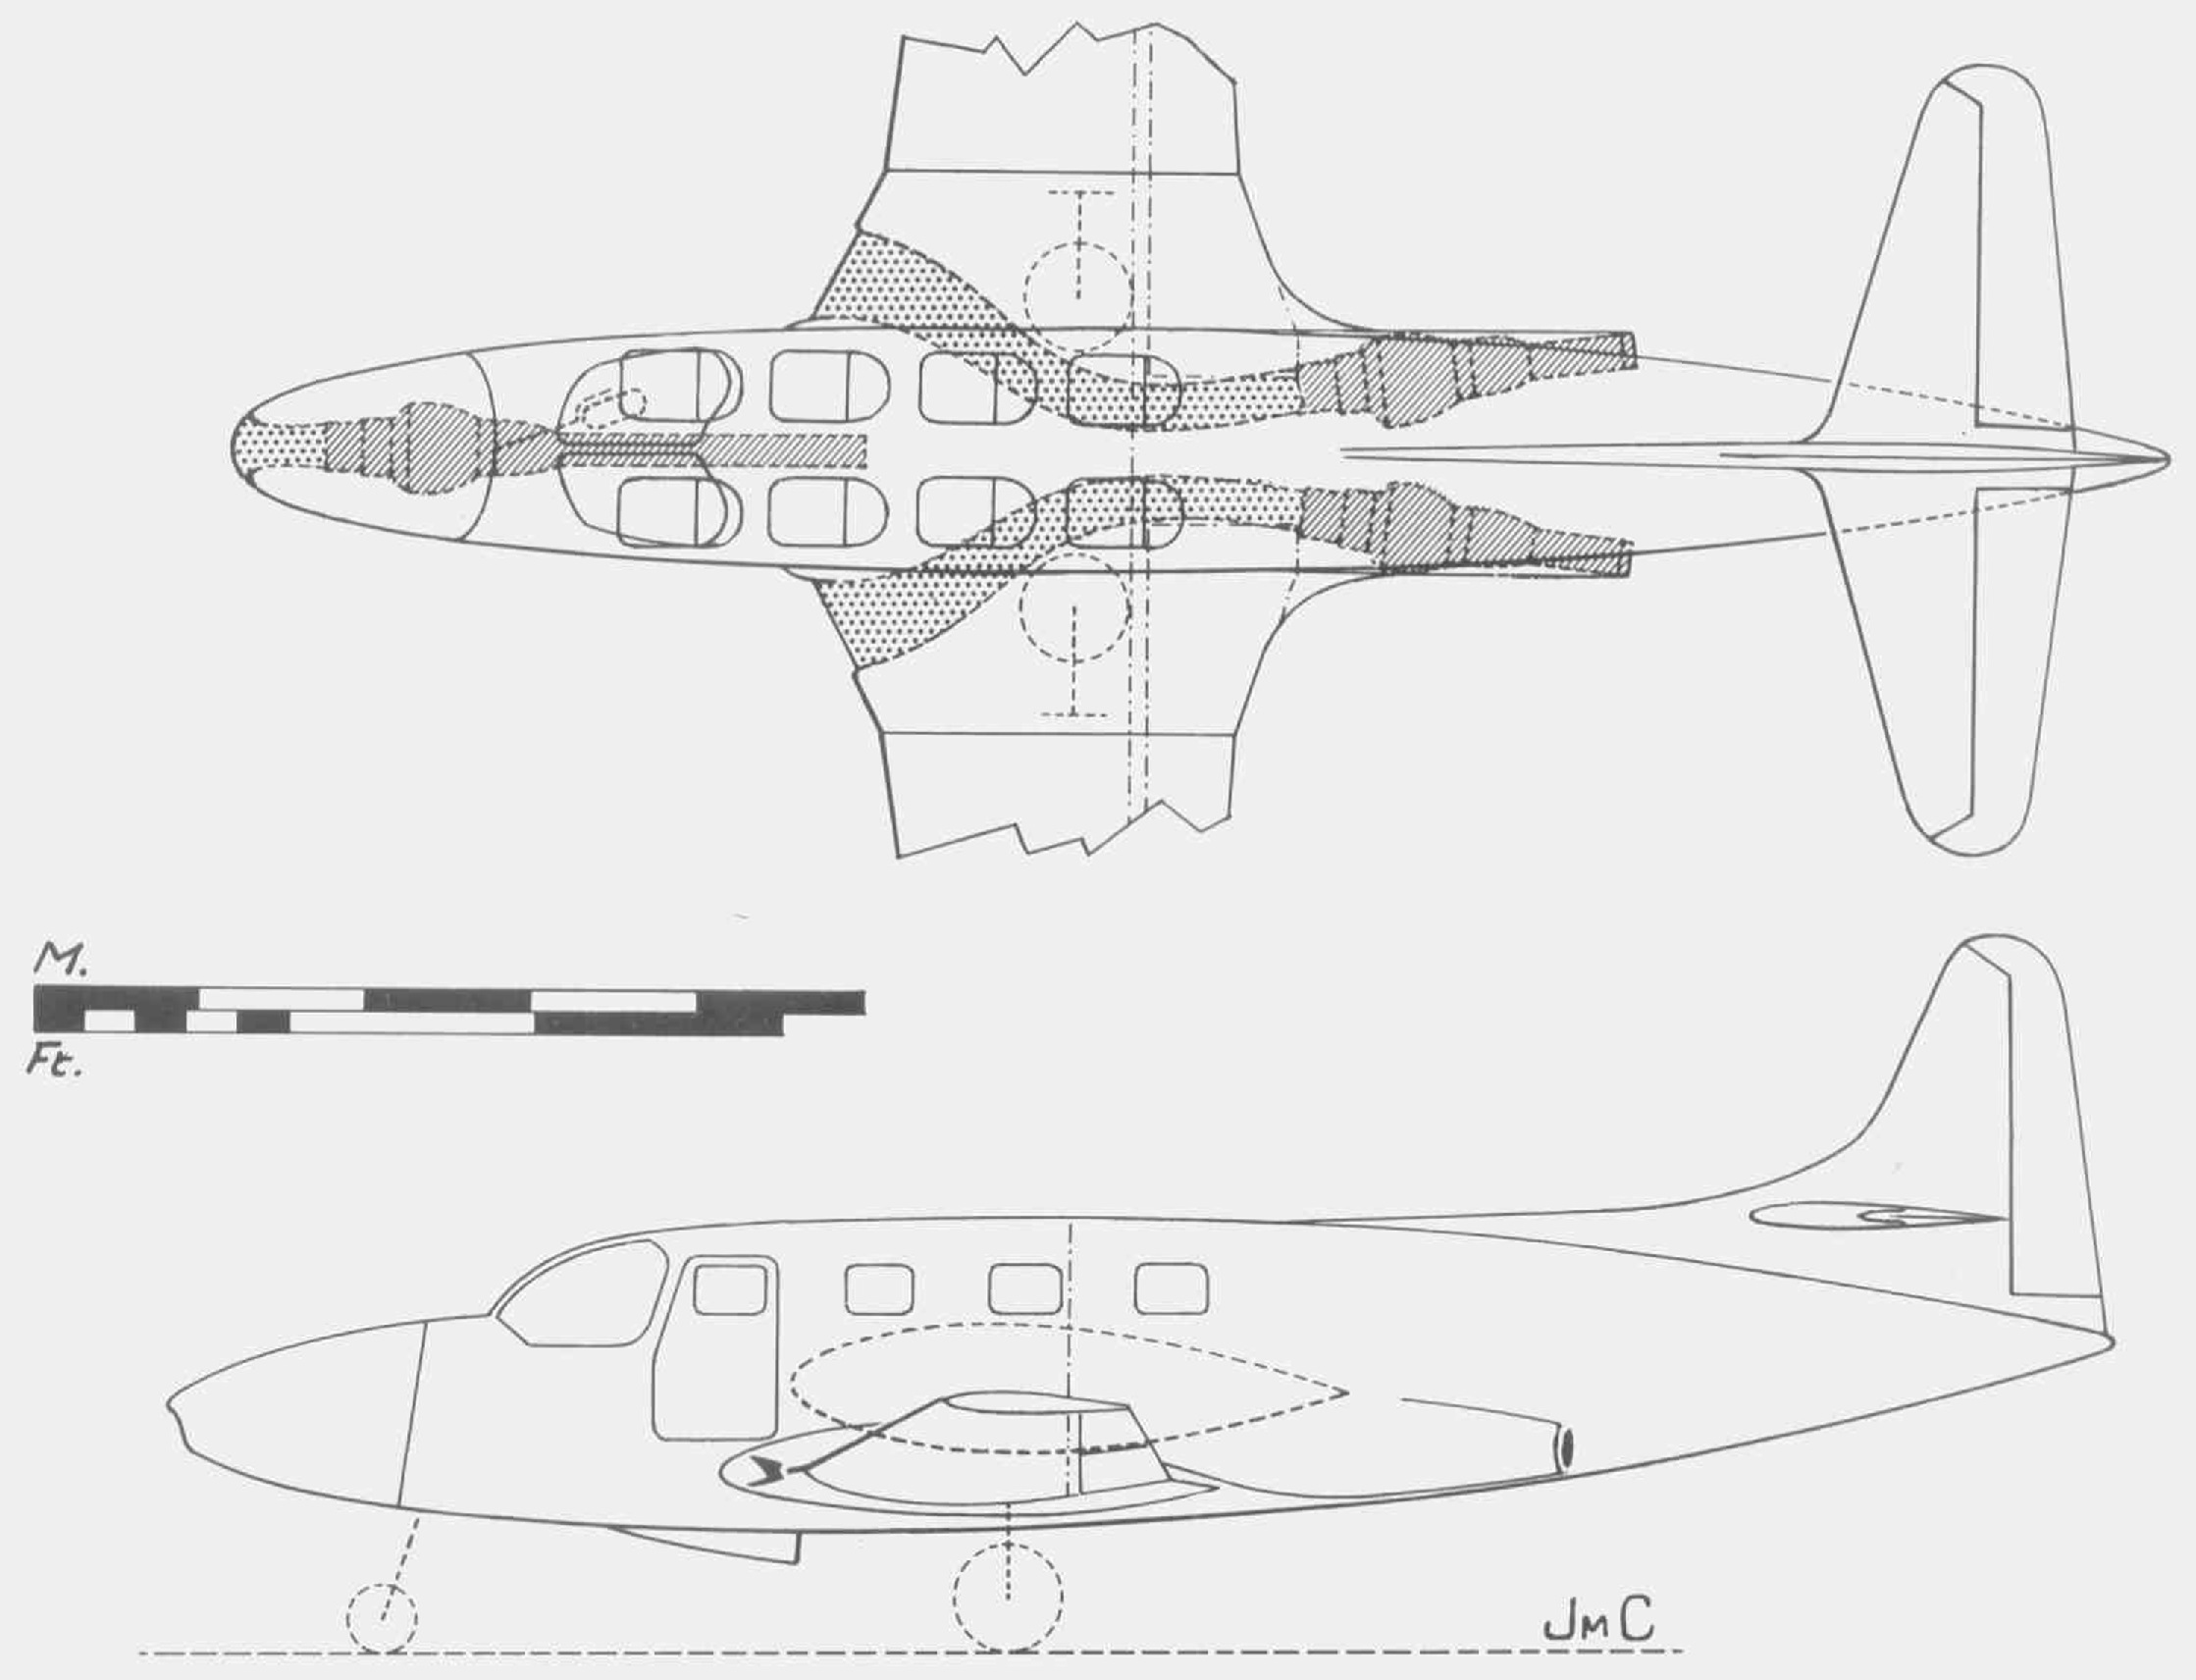 схема проекта административного самолета Breguet Executive с тремя ТРД Turboméca Marboré